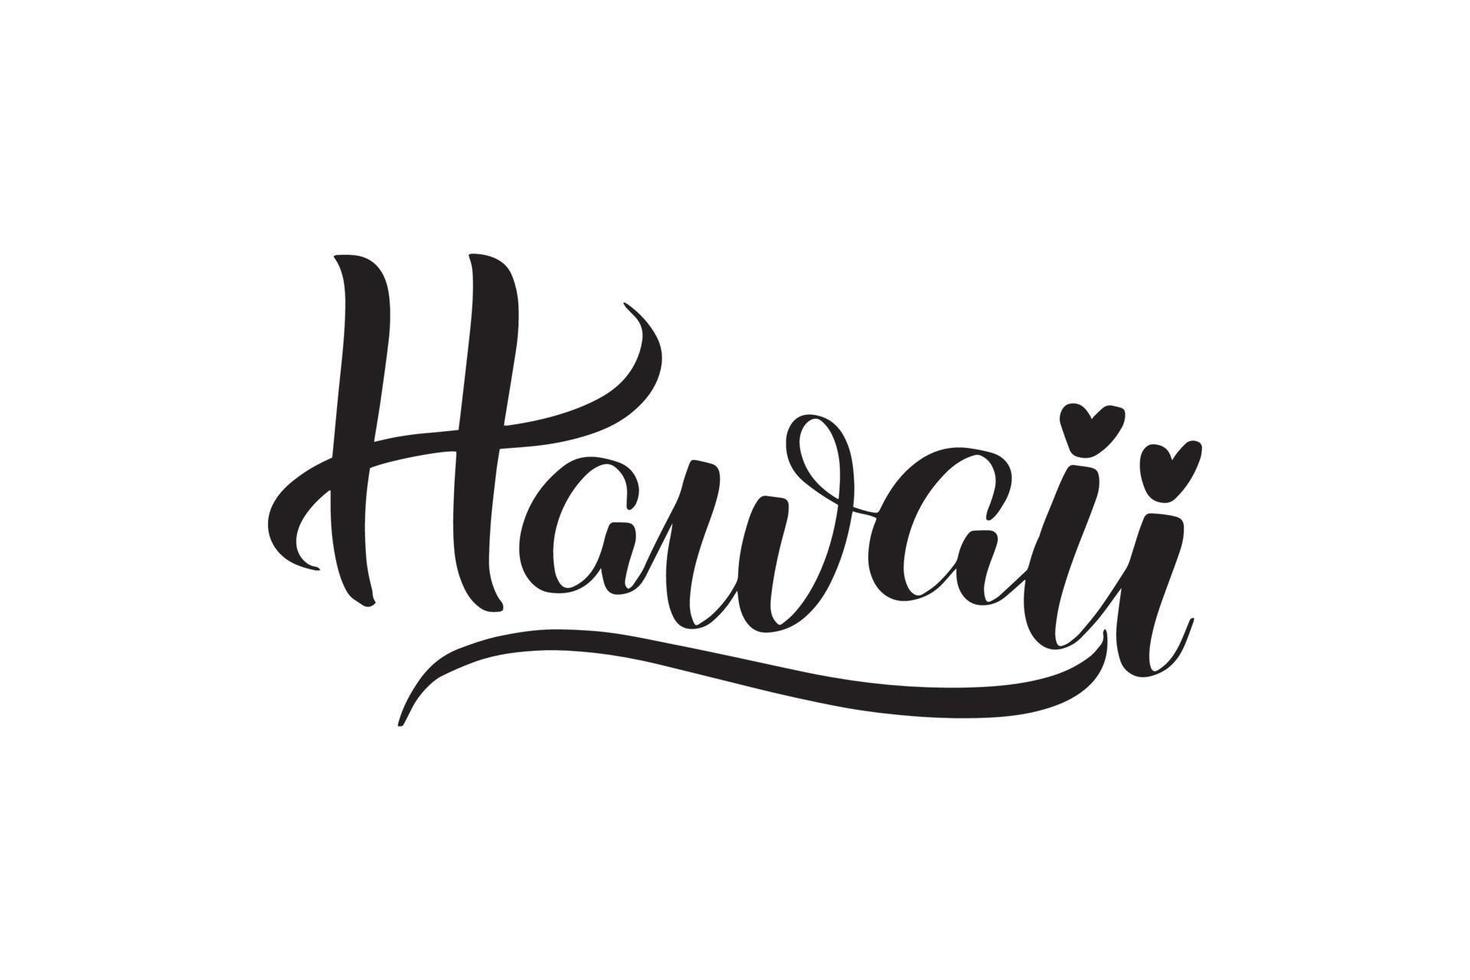 inspirierende handgeschriebene pinselschrift hawaii. vektorkalligraphieillustration lokalisiert auf weißem hintergrund. typografie für banner, abzeichen, postkarten, t-shirts, drucke, poster. vektor